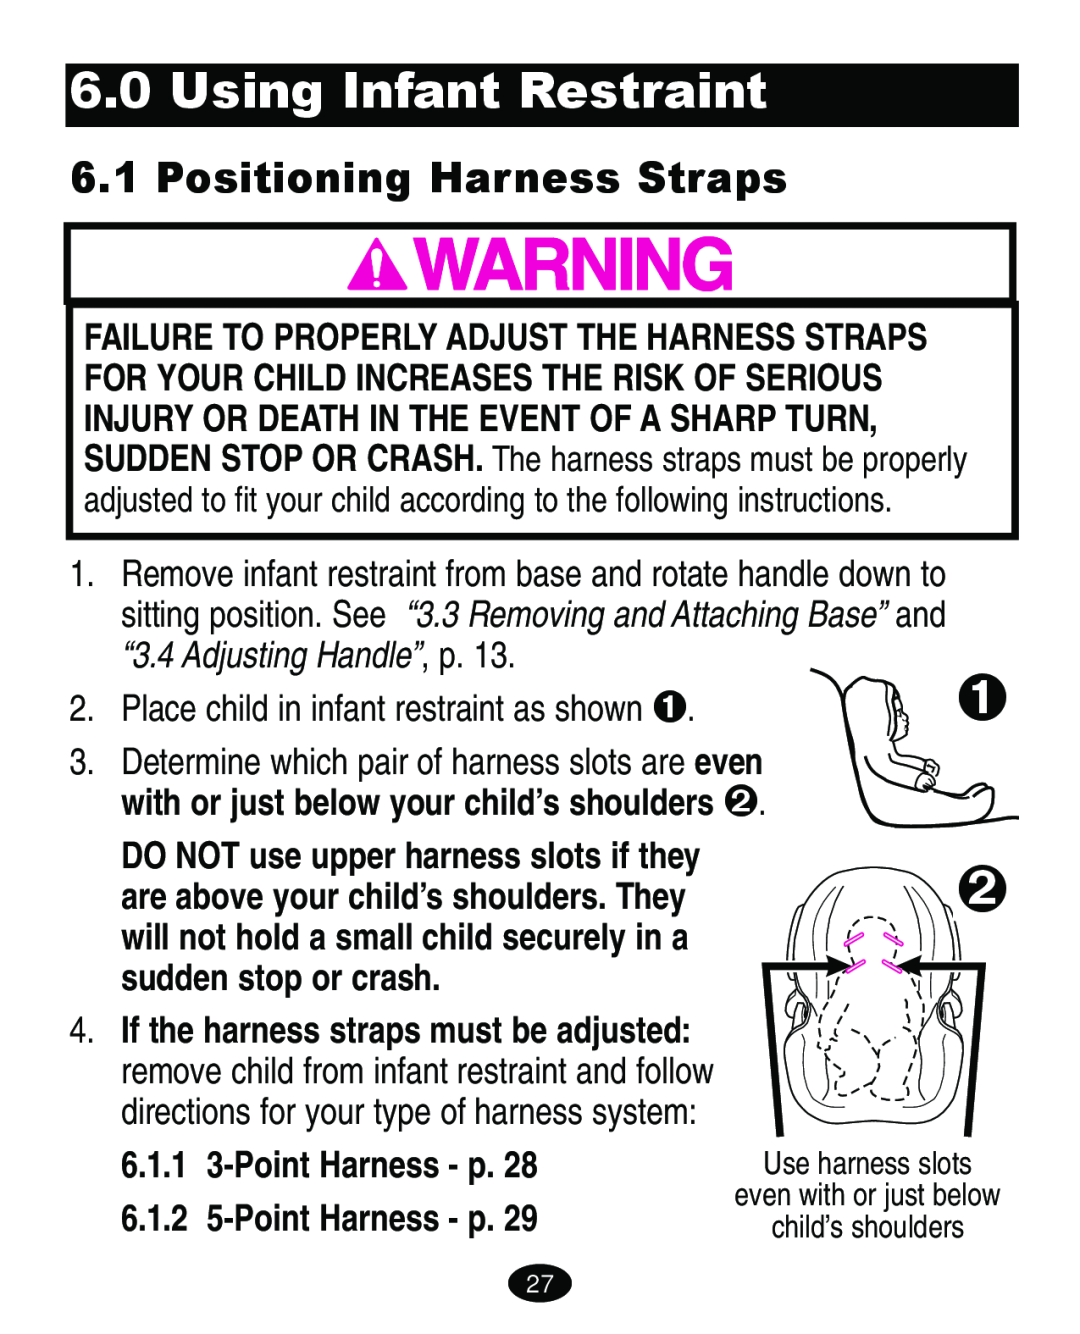 Graco ISPA109AC Using Infant Restraint, Positioning Harness Straps, 6.1.1 3-Point Harness - p 6.1.2 5-Point Harness - p 